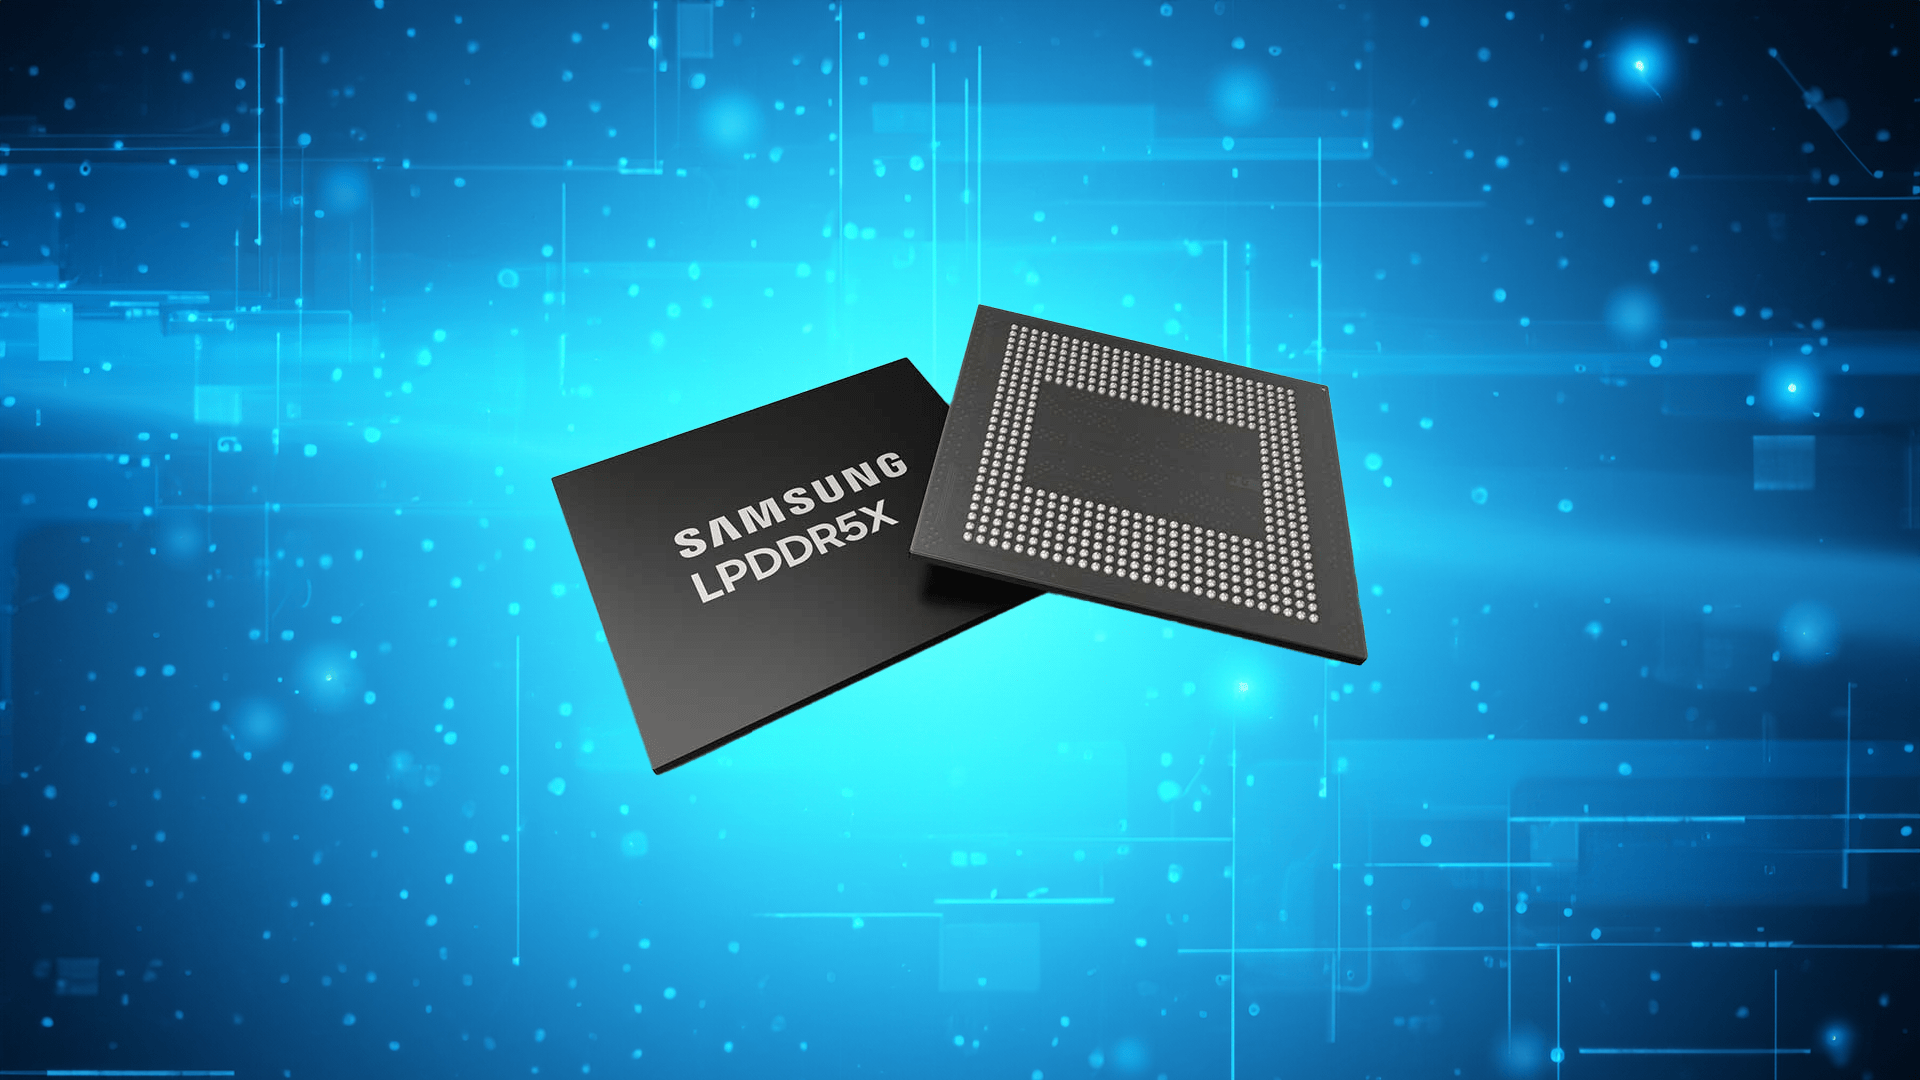 Dwa układy pamięci RAM LPDDR5X firmy Samsung na niebieskim tle z cyfrowymi obwodami i elementami świetlnymi.